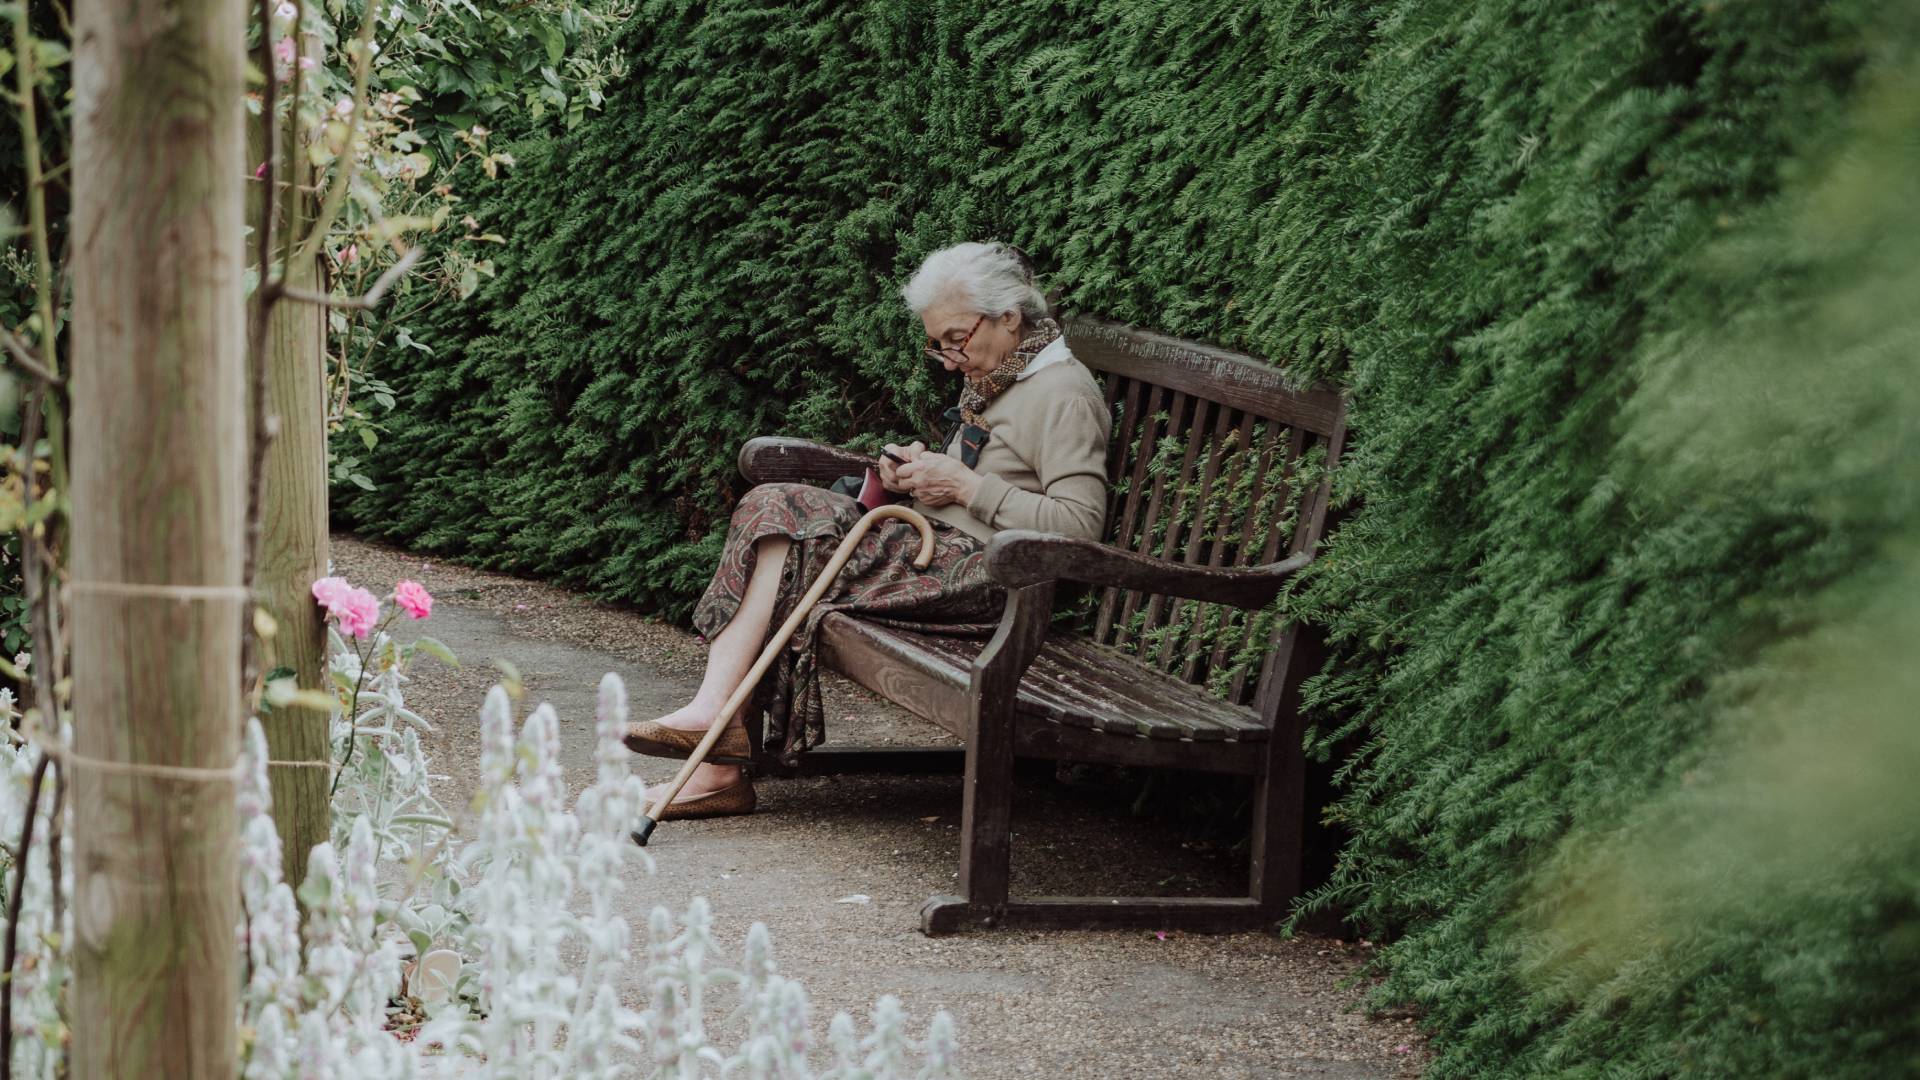 Kerti padon üldögélő idős nő.